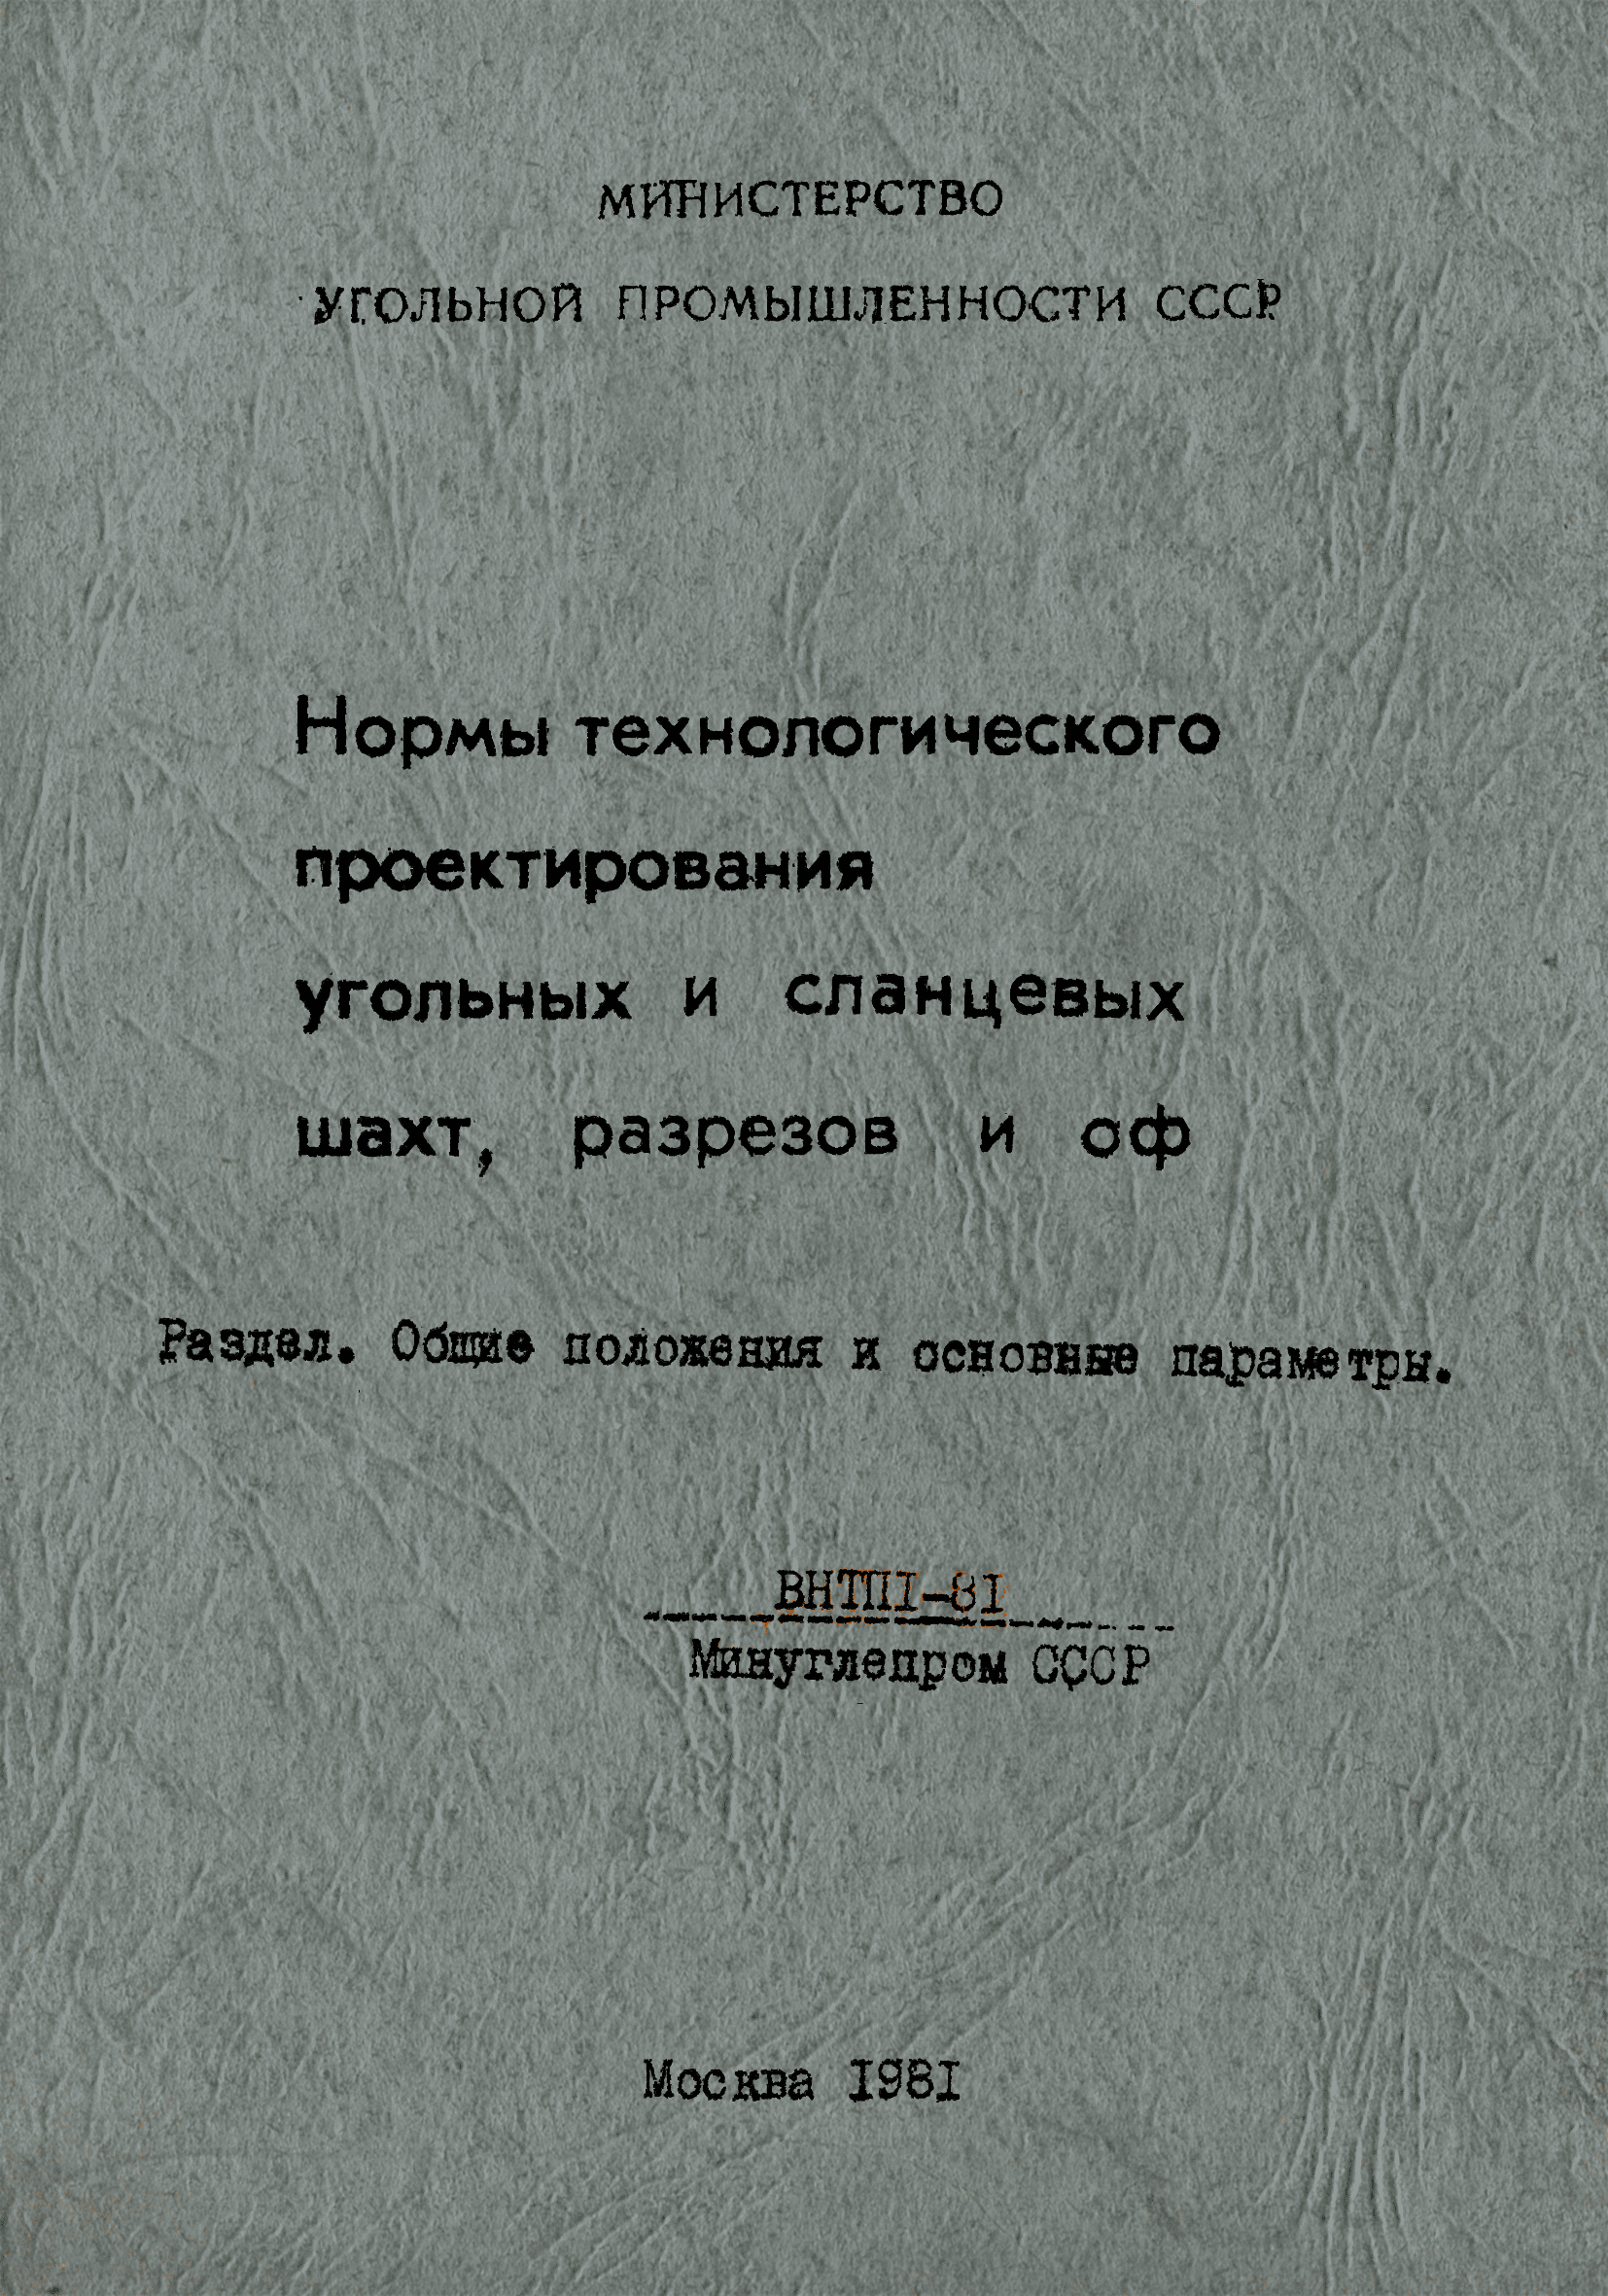 ВНТП 1-81